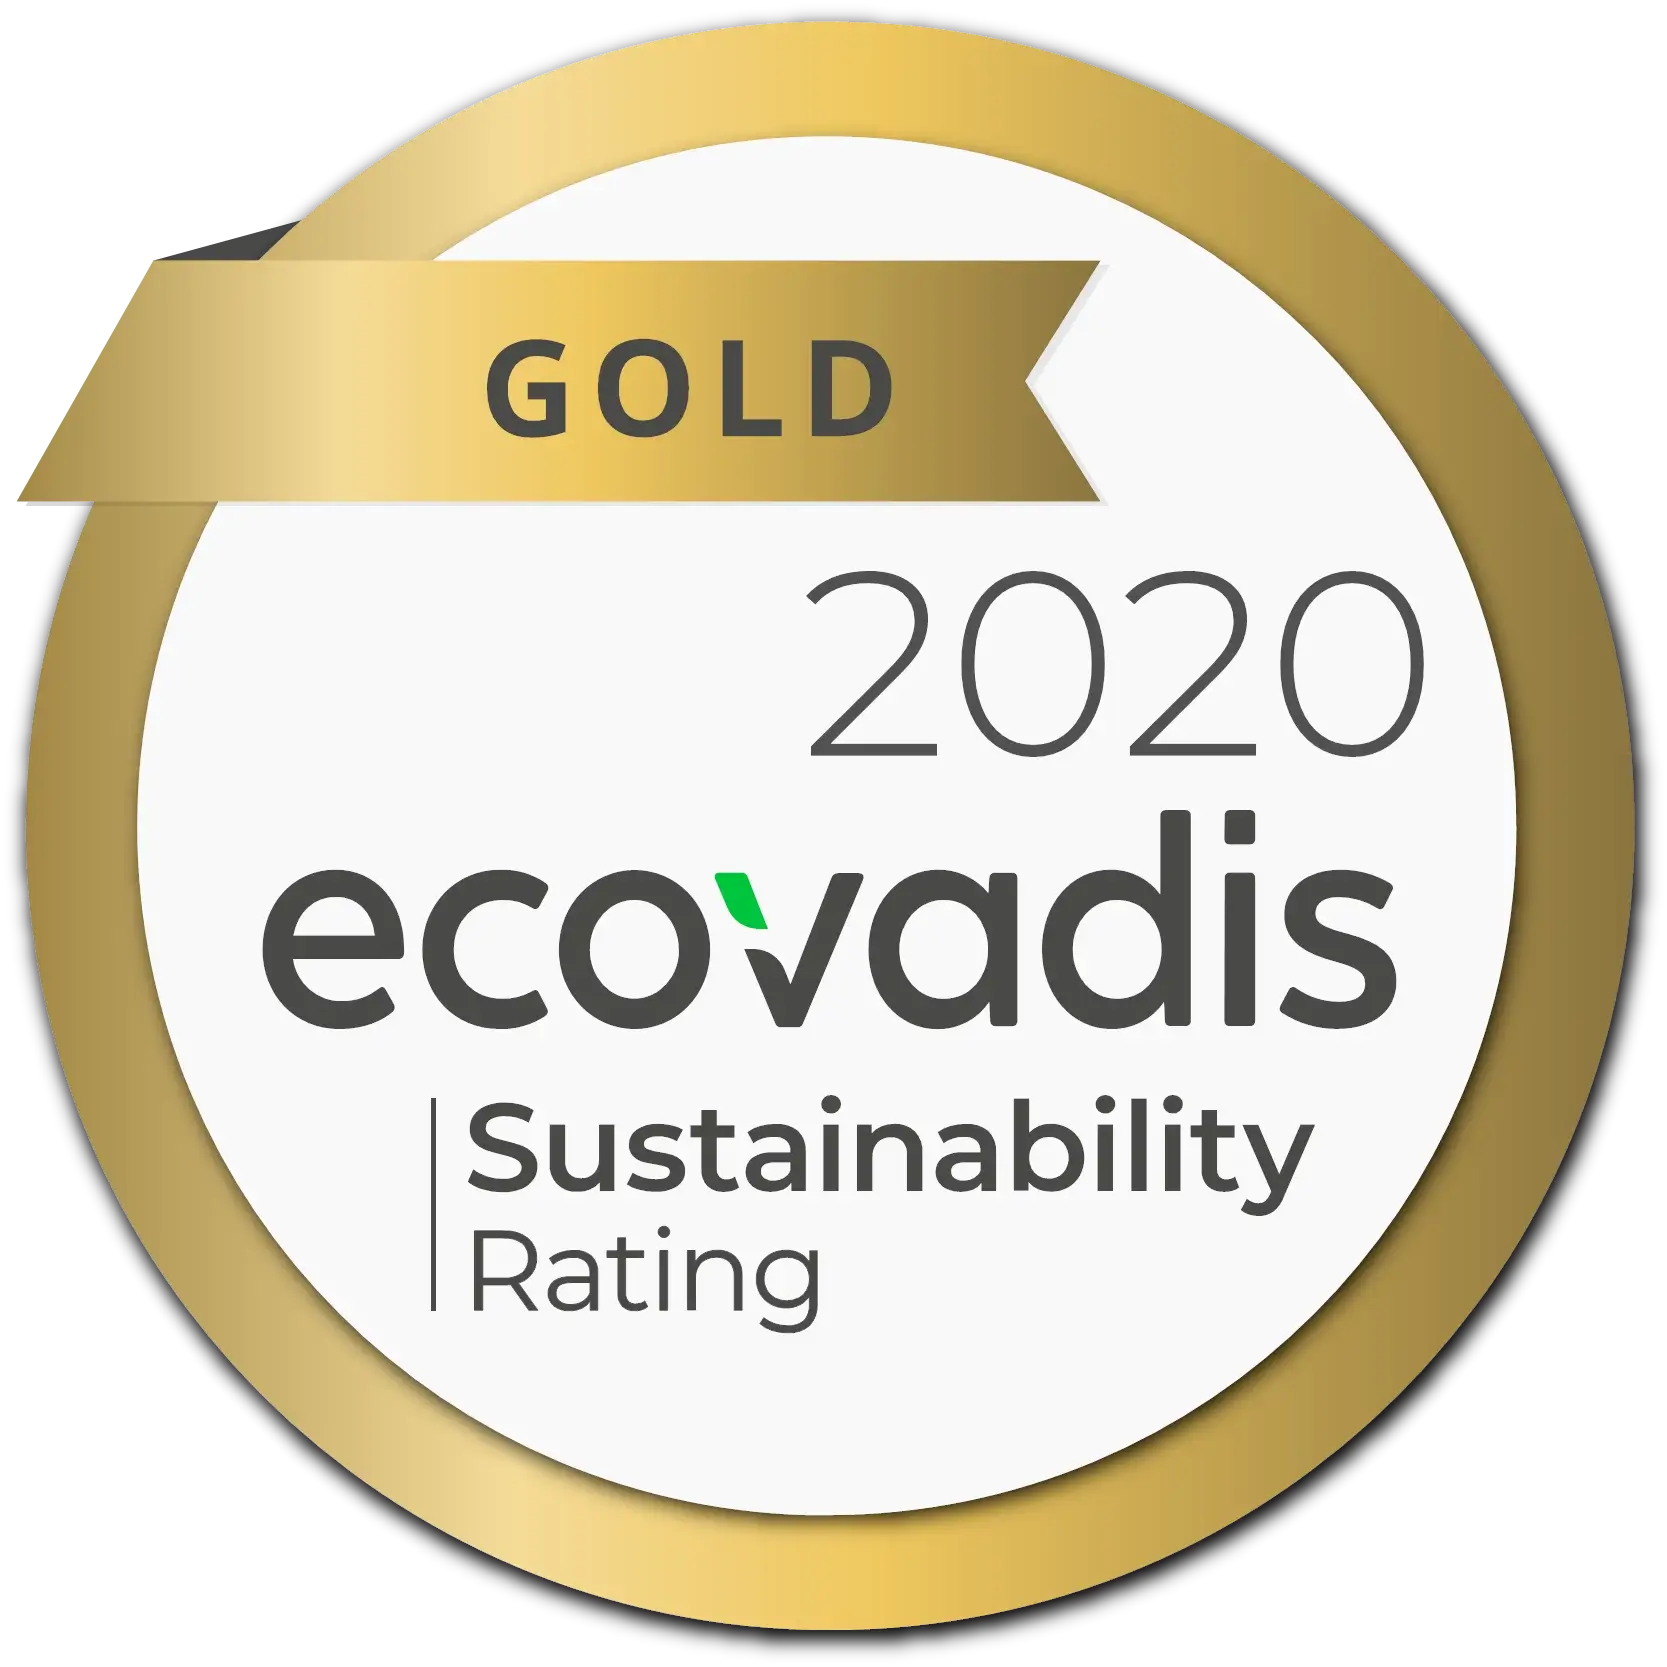 Stramasa Ecovadis gold rating